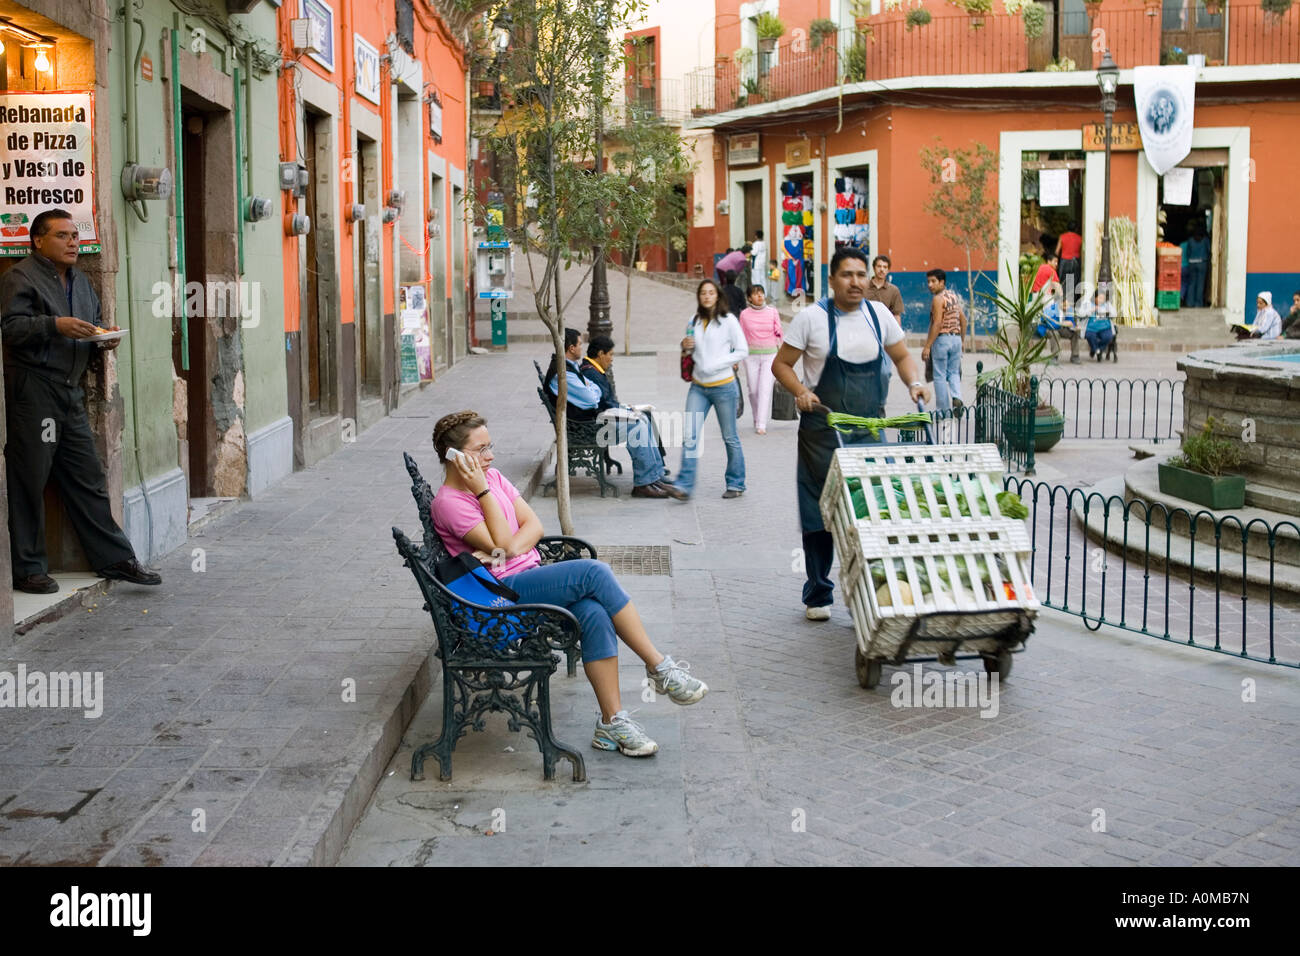 Street scene in Guanajuato a UNESCO World Heritage site Stock Photo